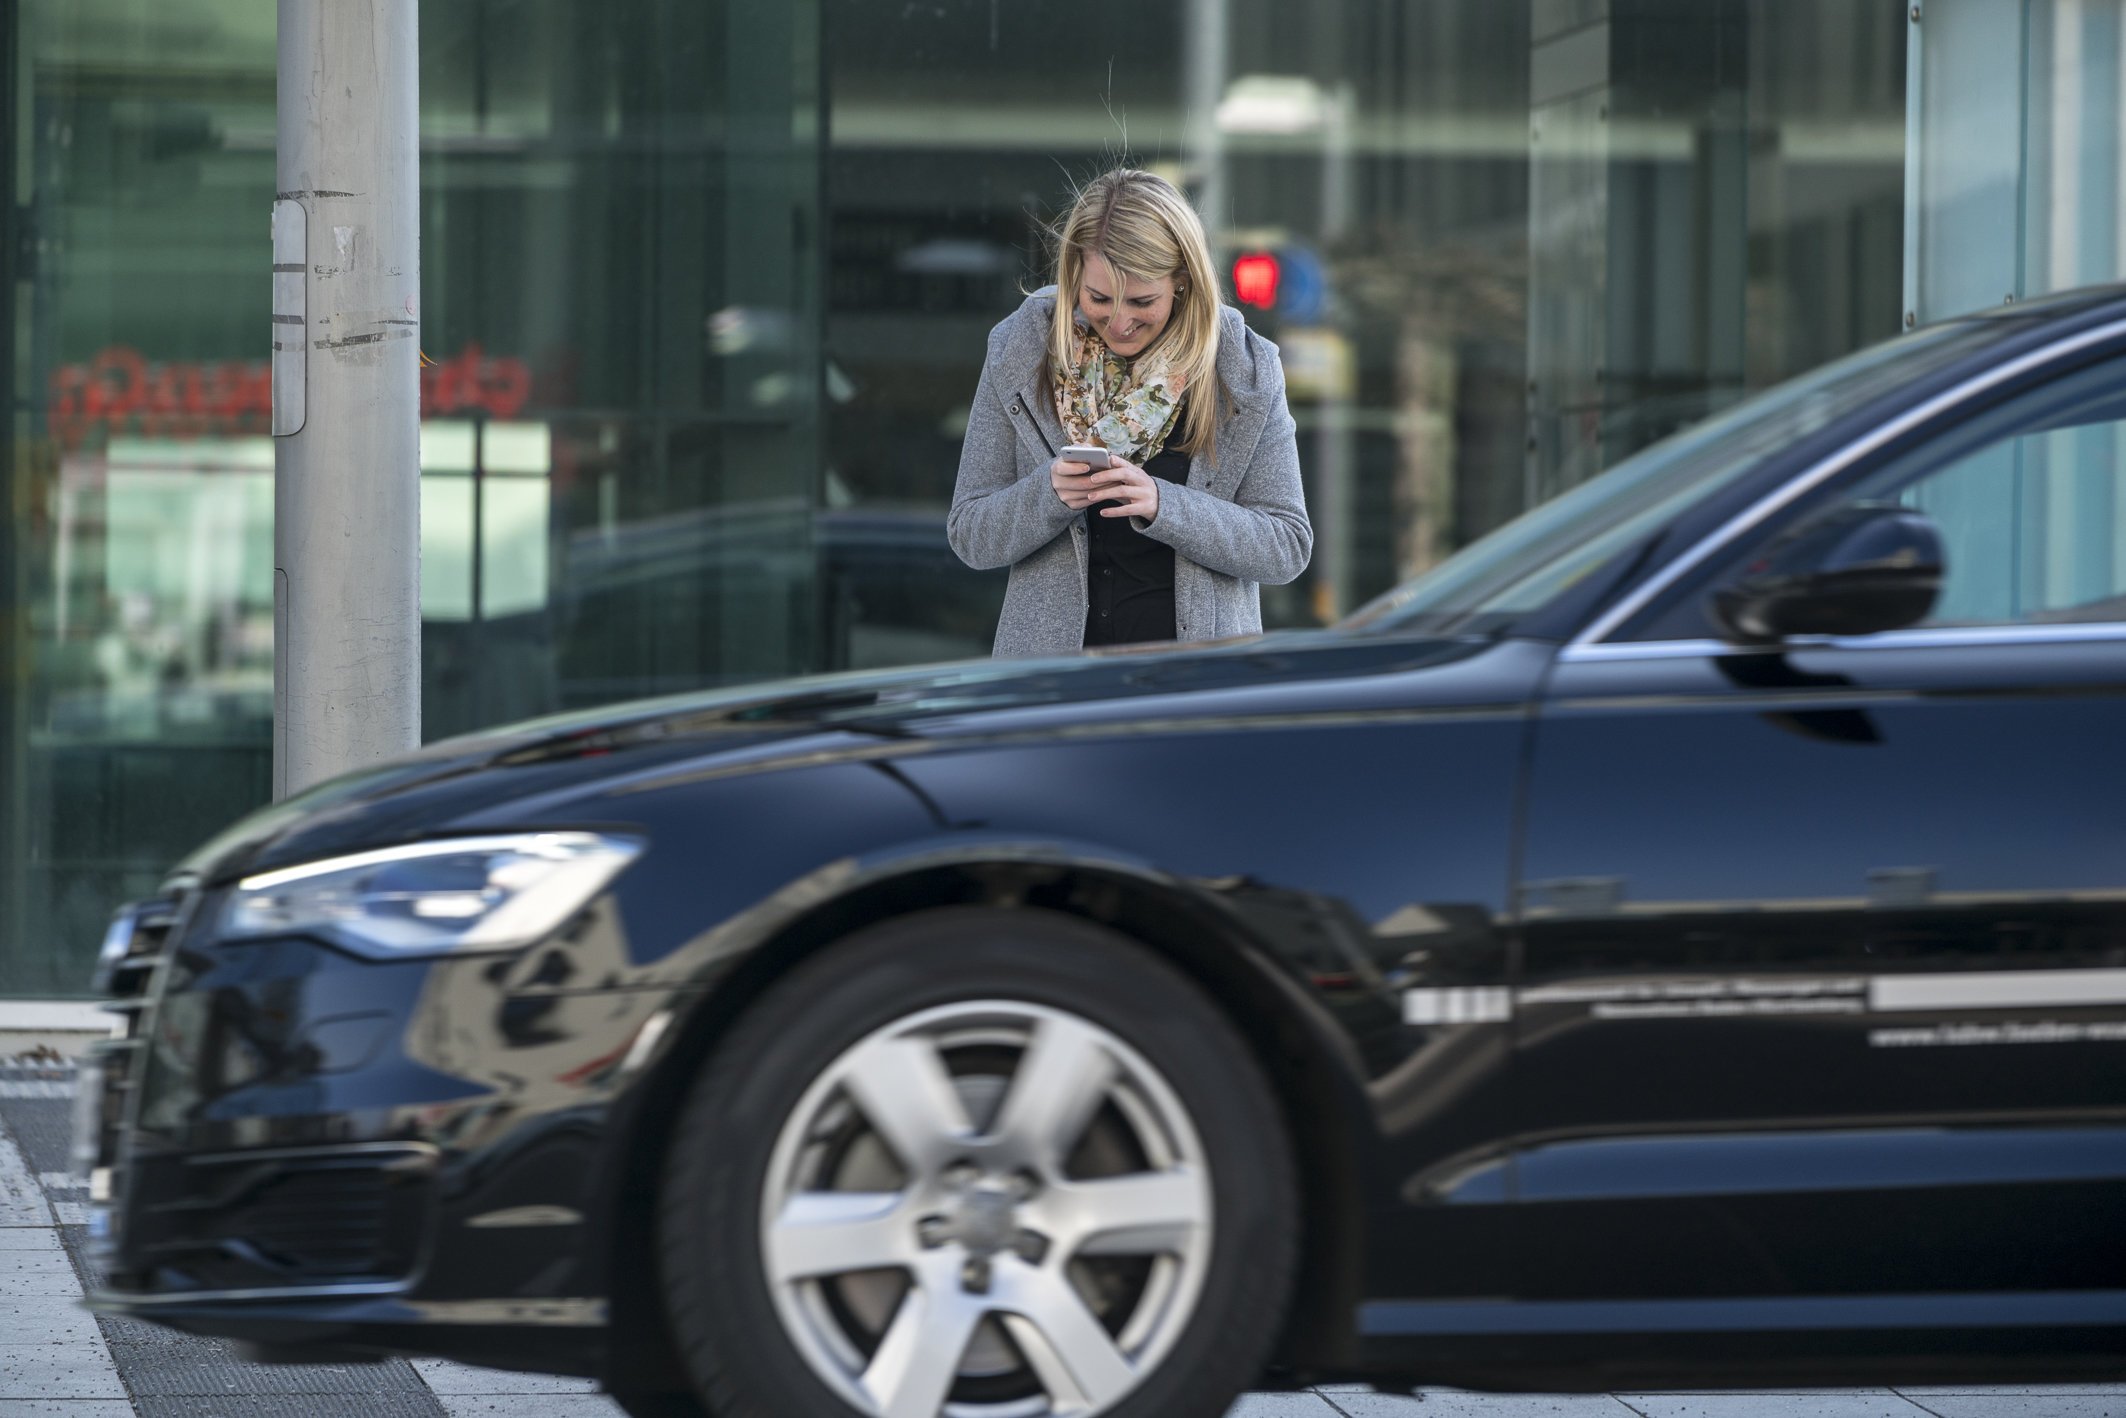 Fußgänger im Straßenverkehr sind häufig abgelenkt durch die Nutzung ihres Smartphones. Tödliche Unfälle etwa beim Überqueren von Kreuzungen und Bahnübergängen häufen sich. Deshalb experimentieren Städte wie Augsburg nun mit Warnlichtern, die im Boden aufblinken.